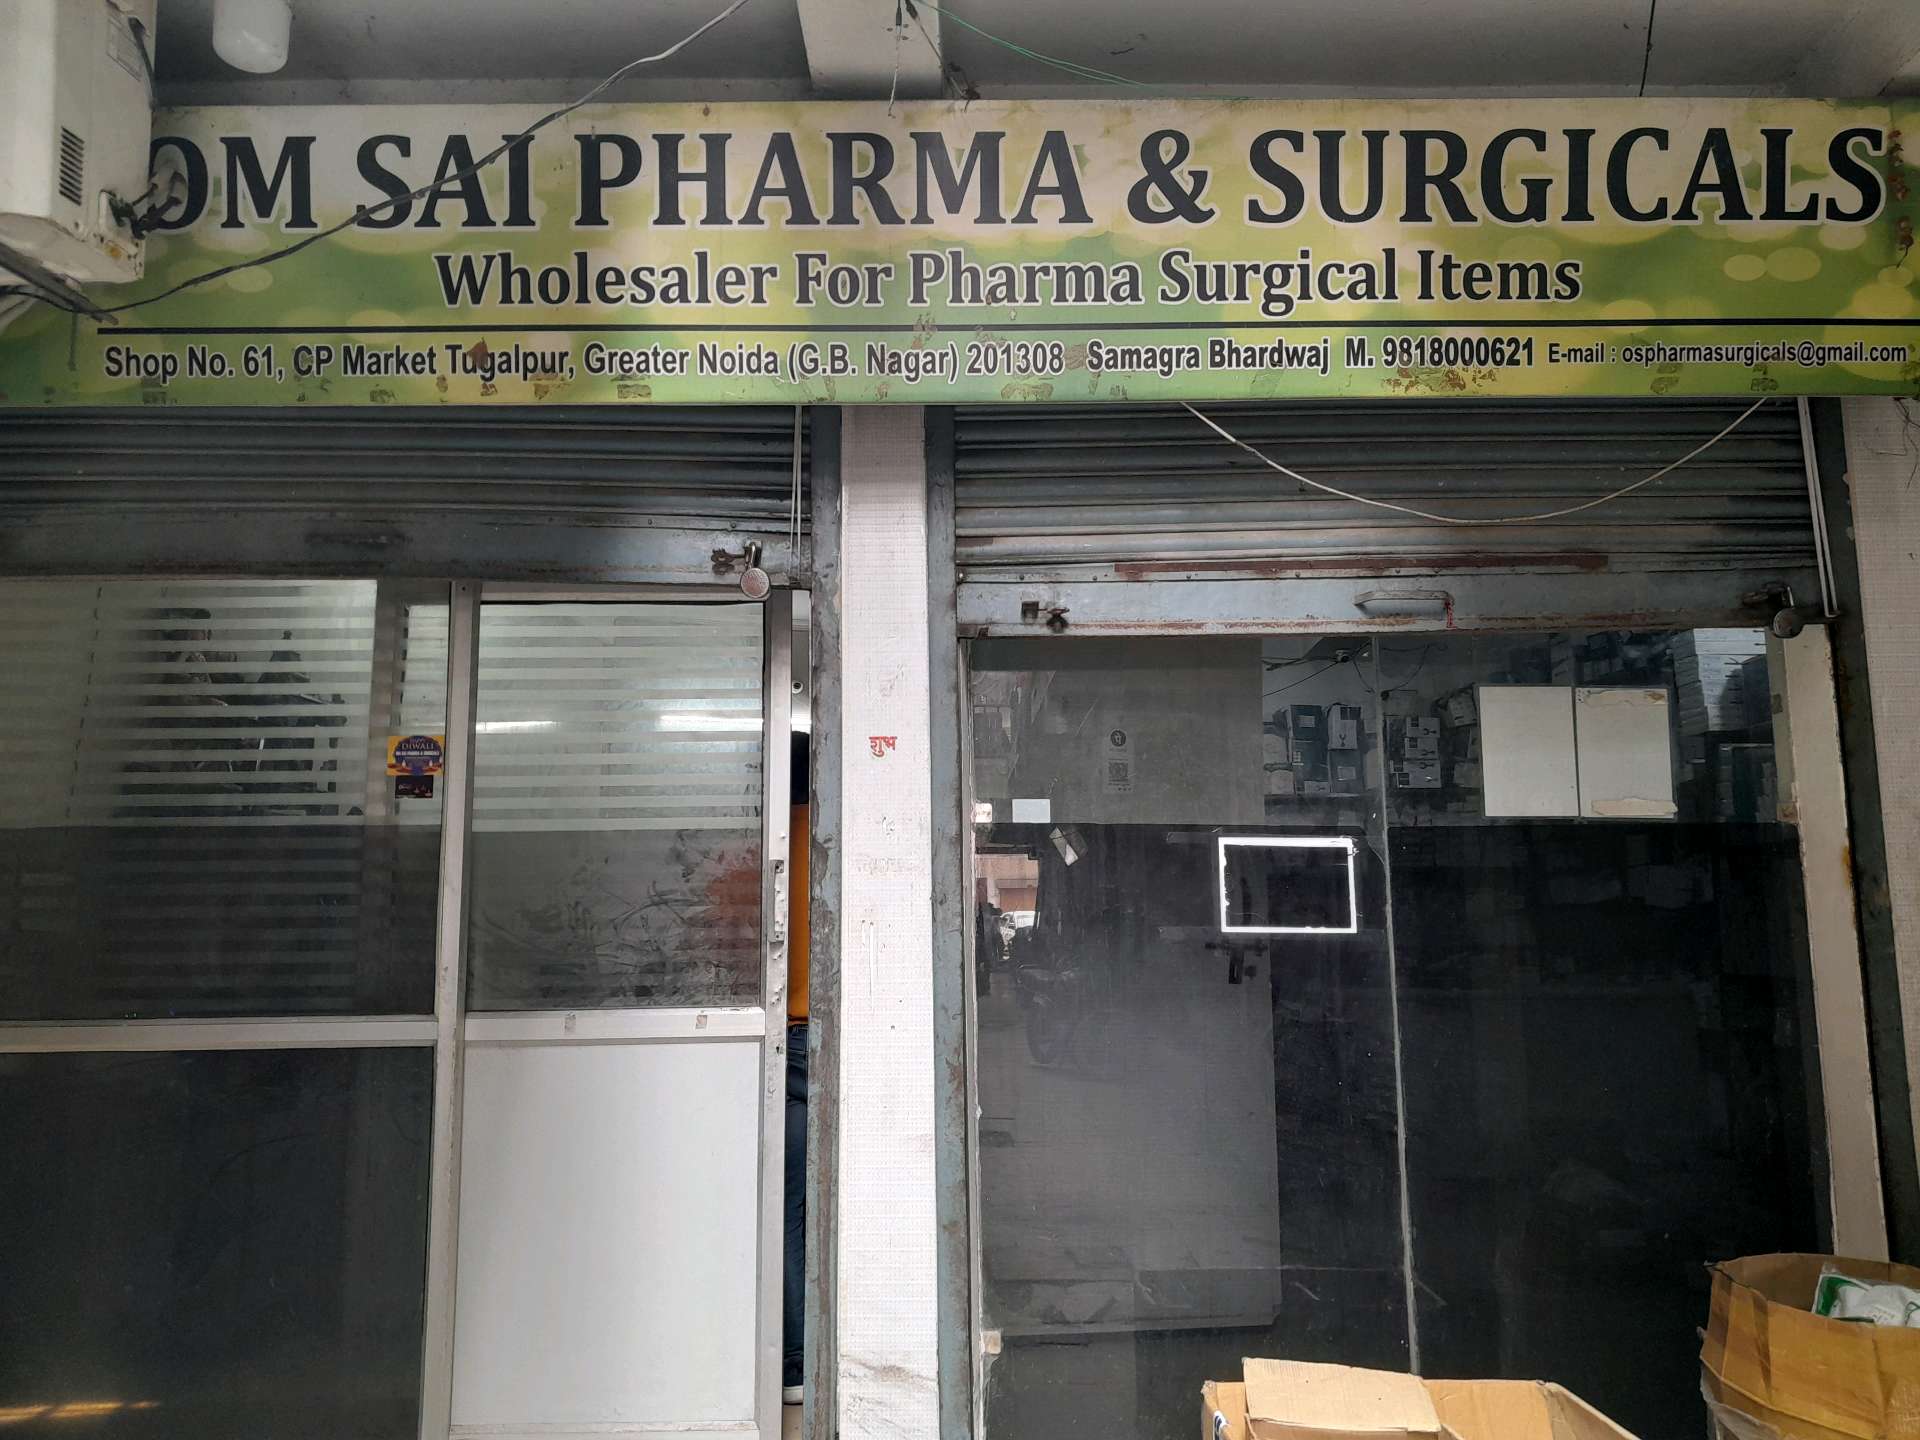 Om Sai Pharma & Surgicals